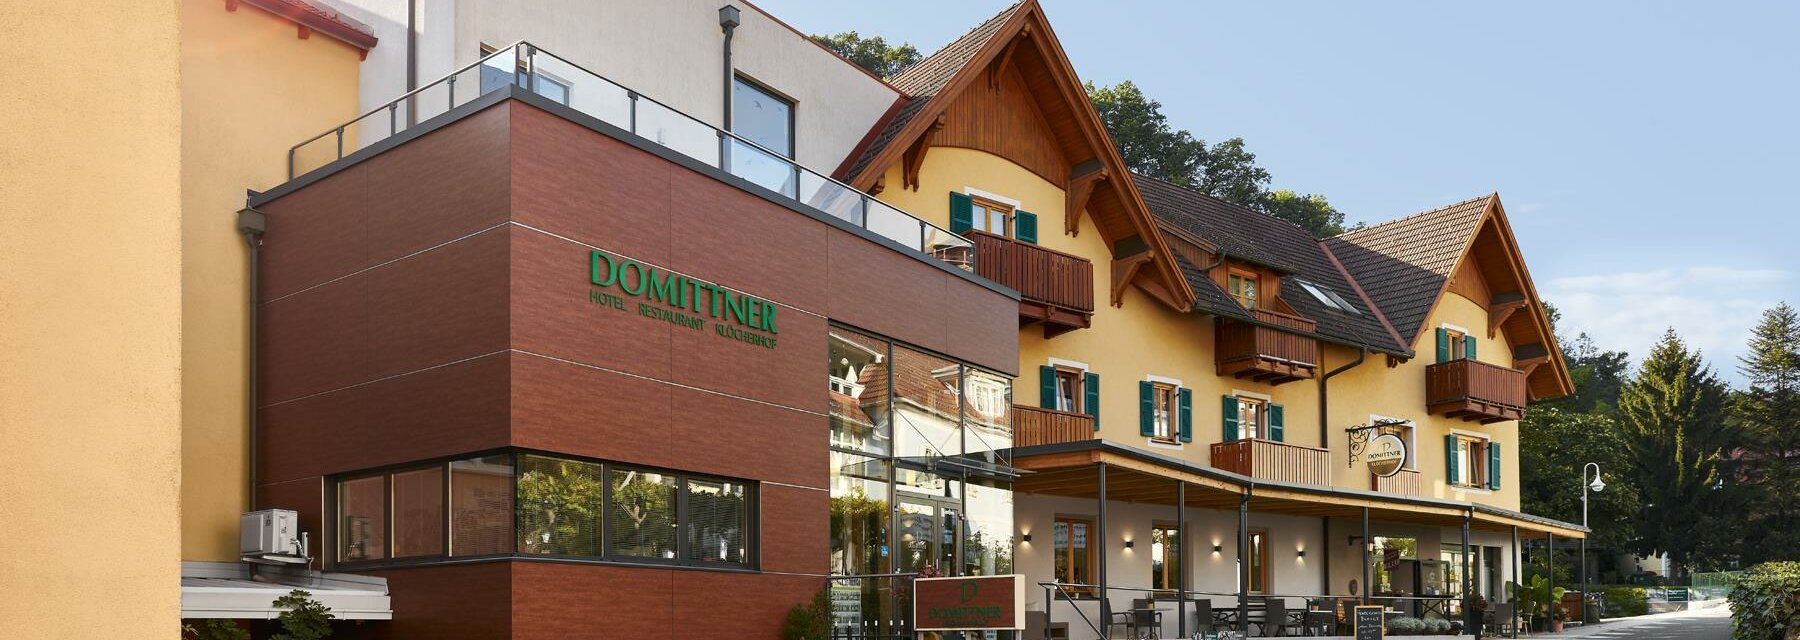 Hotel Domittner